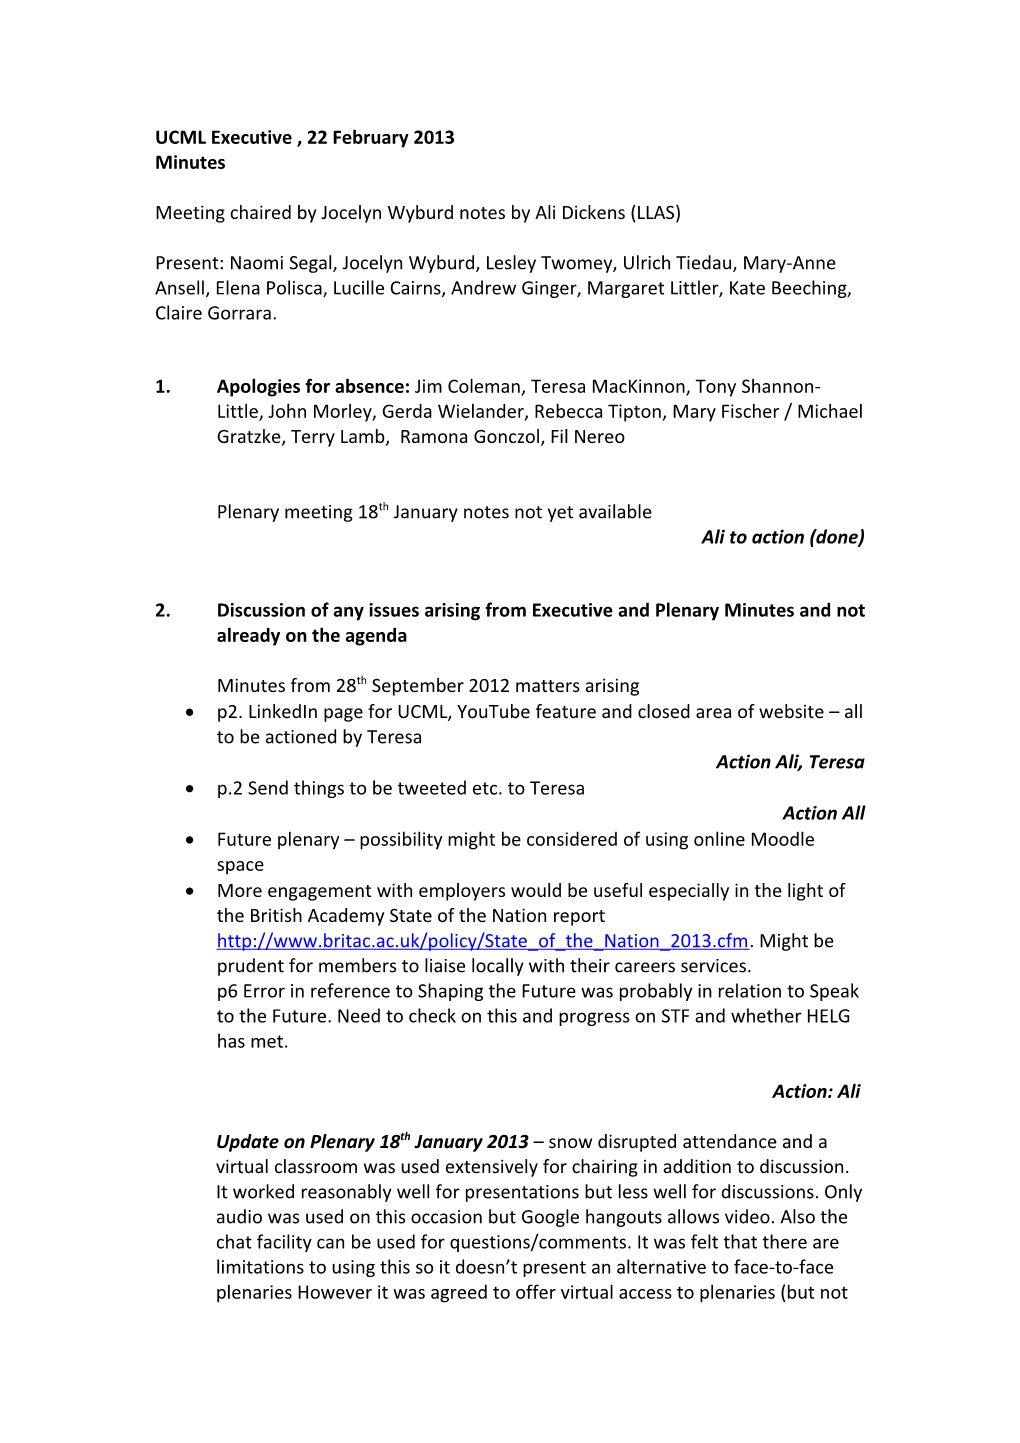 UCML Executive Agenda, 24 February 2012